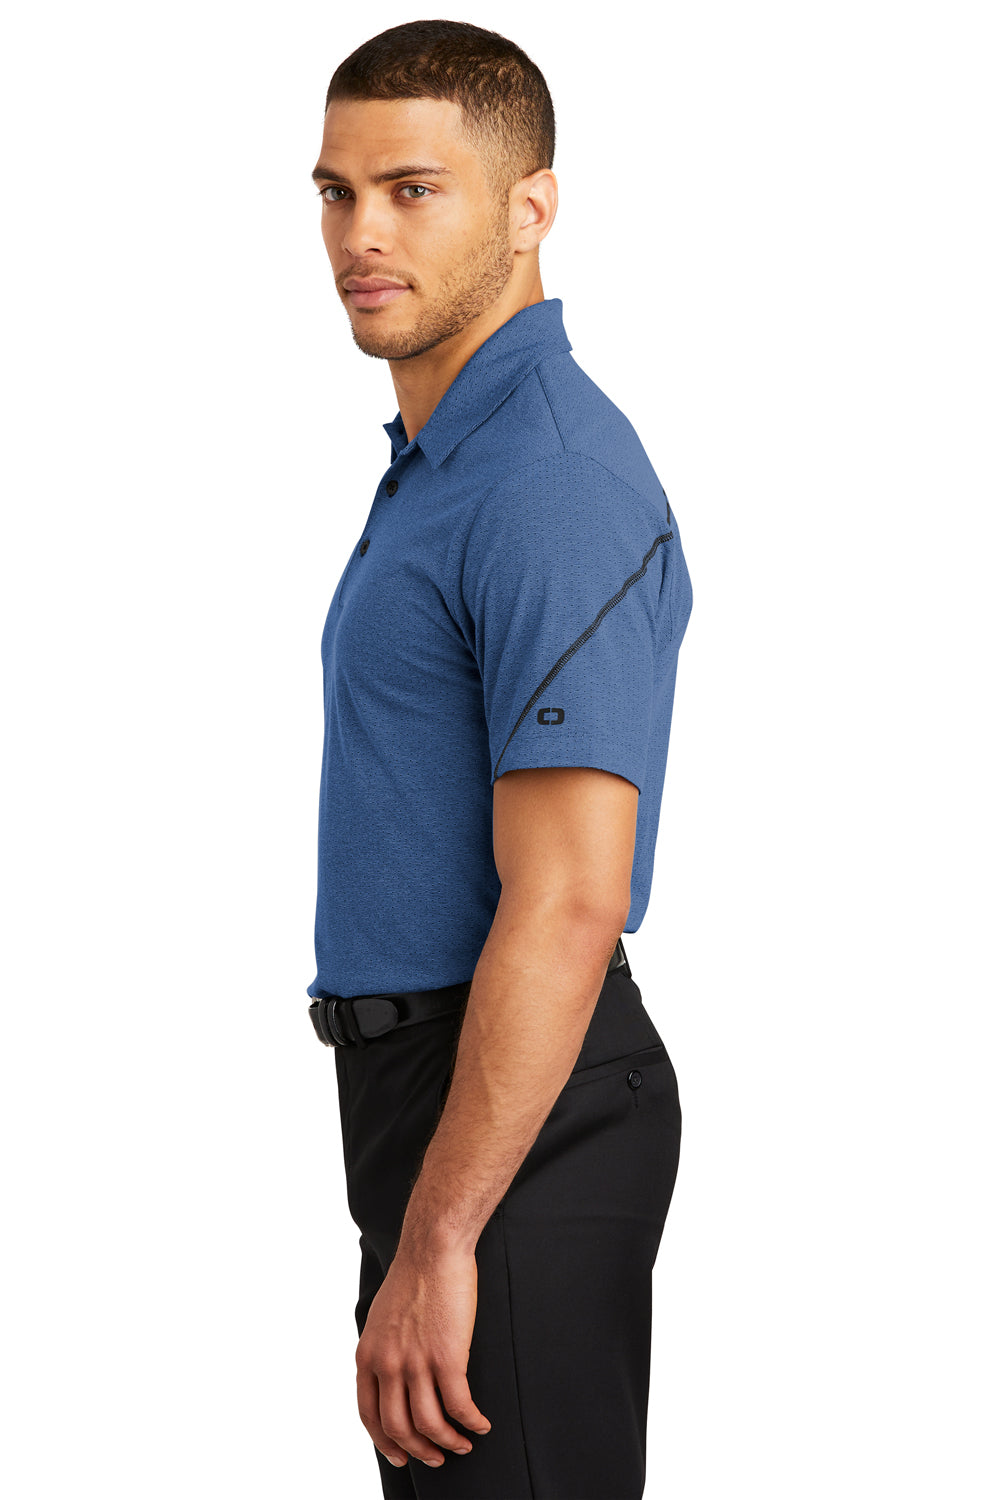 Ogio OG135 Mens Tread Moisture Wicking Short Sleeve Polo Shirt Blue Side